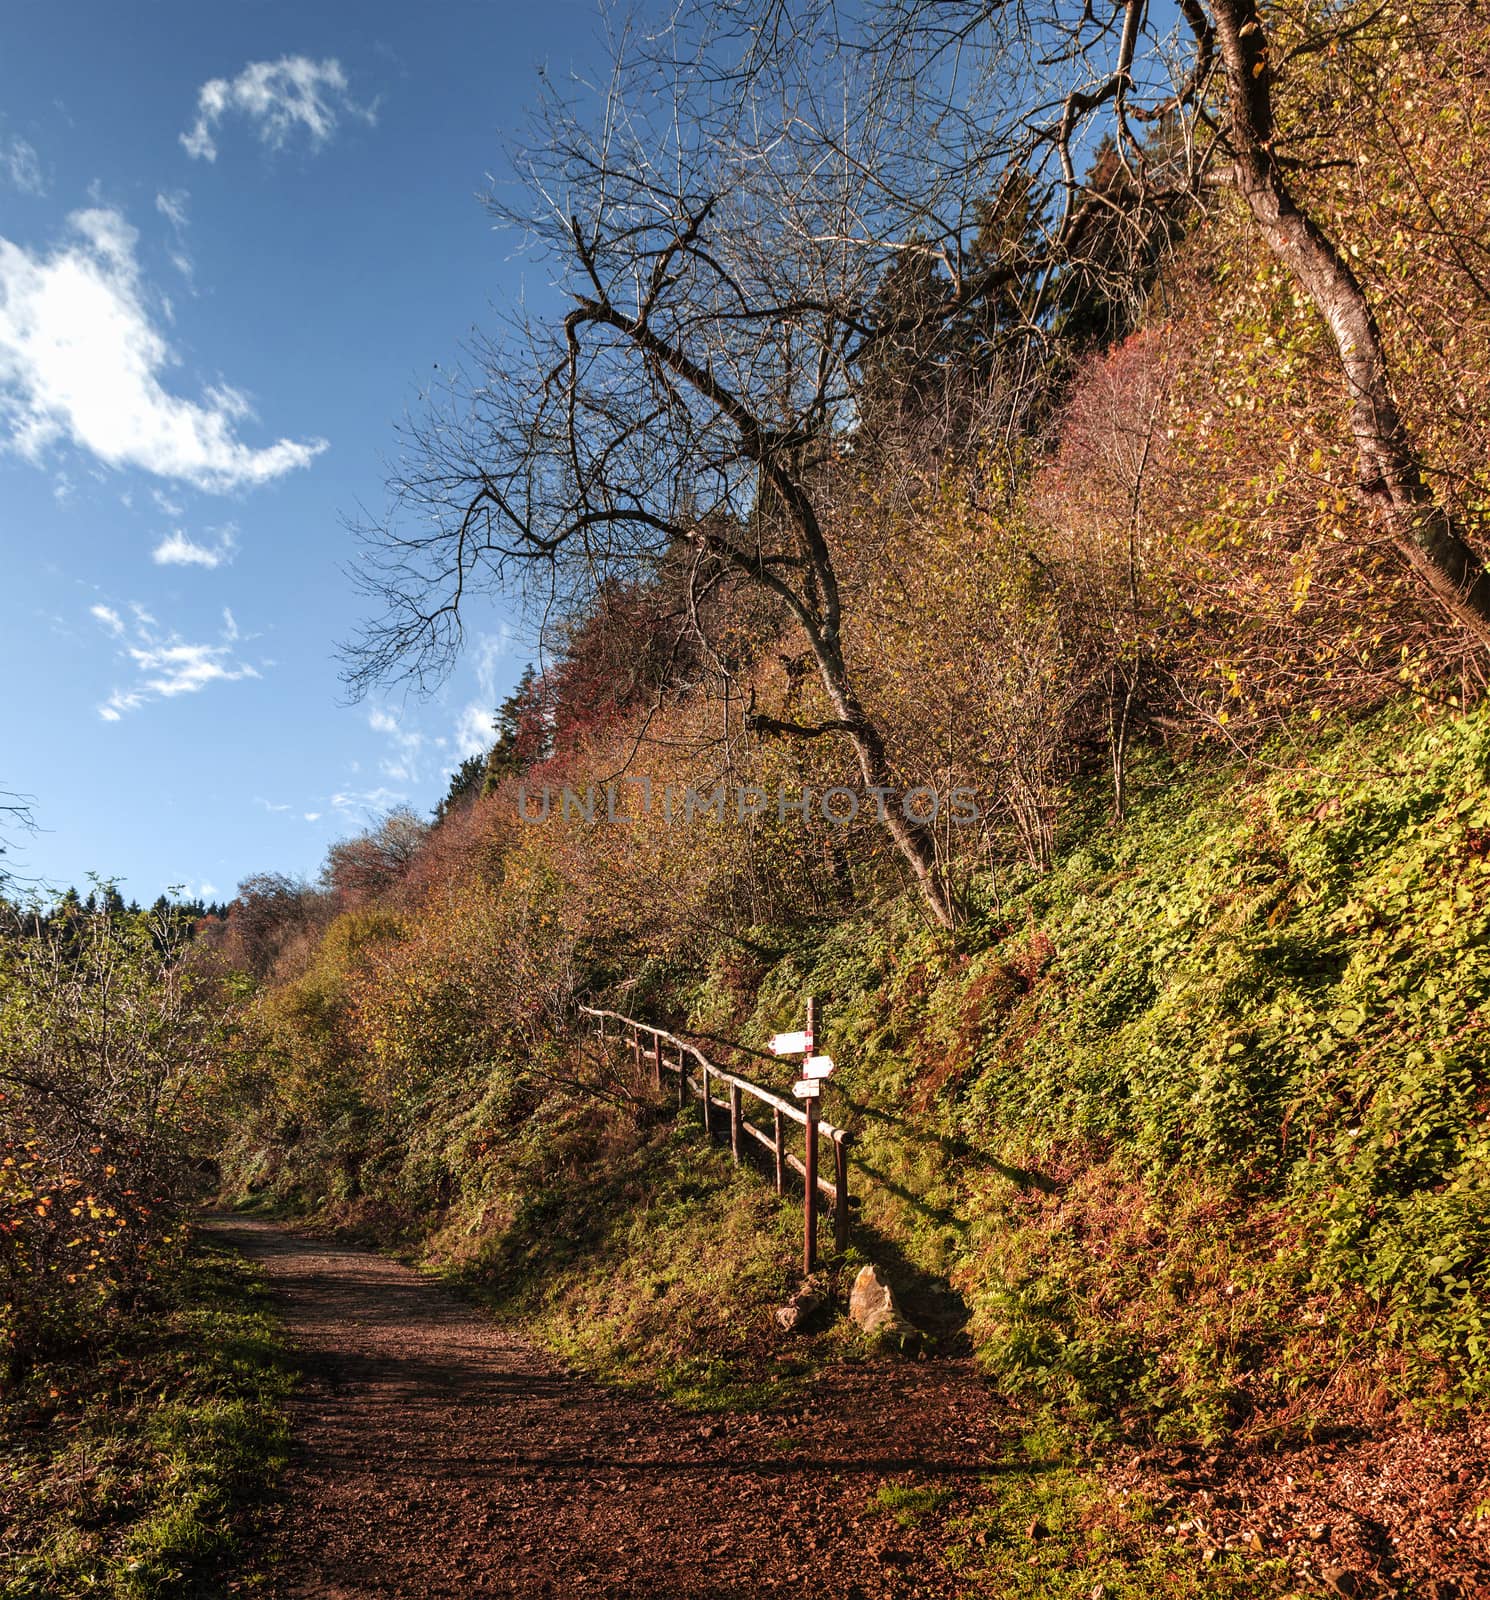 Mountain path in autumn season, Campo dei Fiori - Varese by Mdc1970